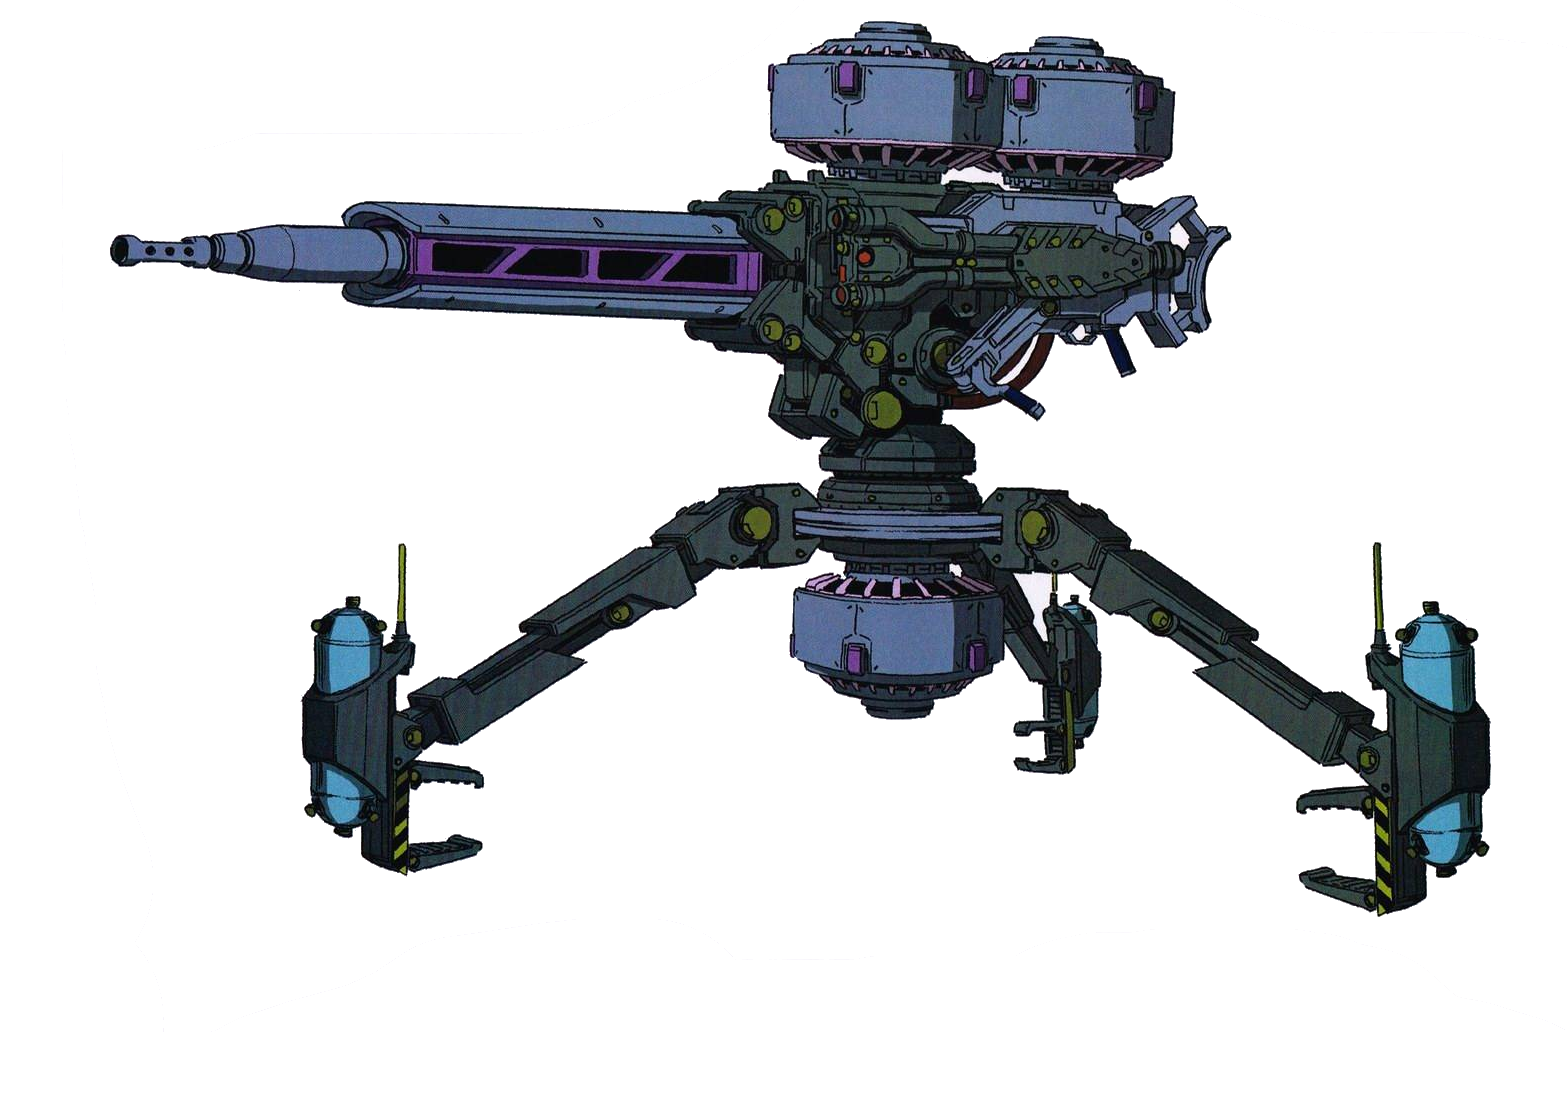 Big Gun, The Gundam Wiki